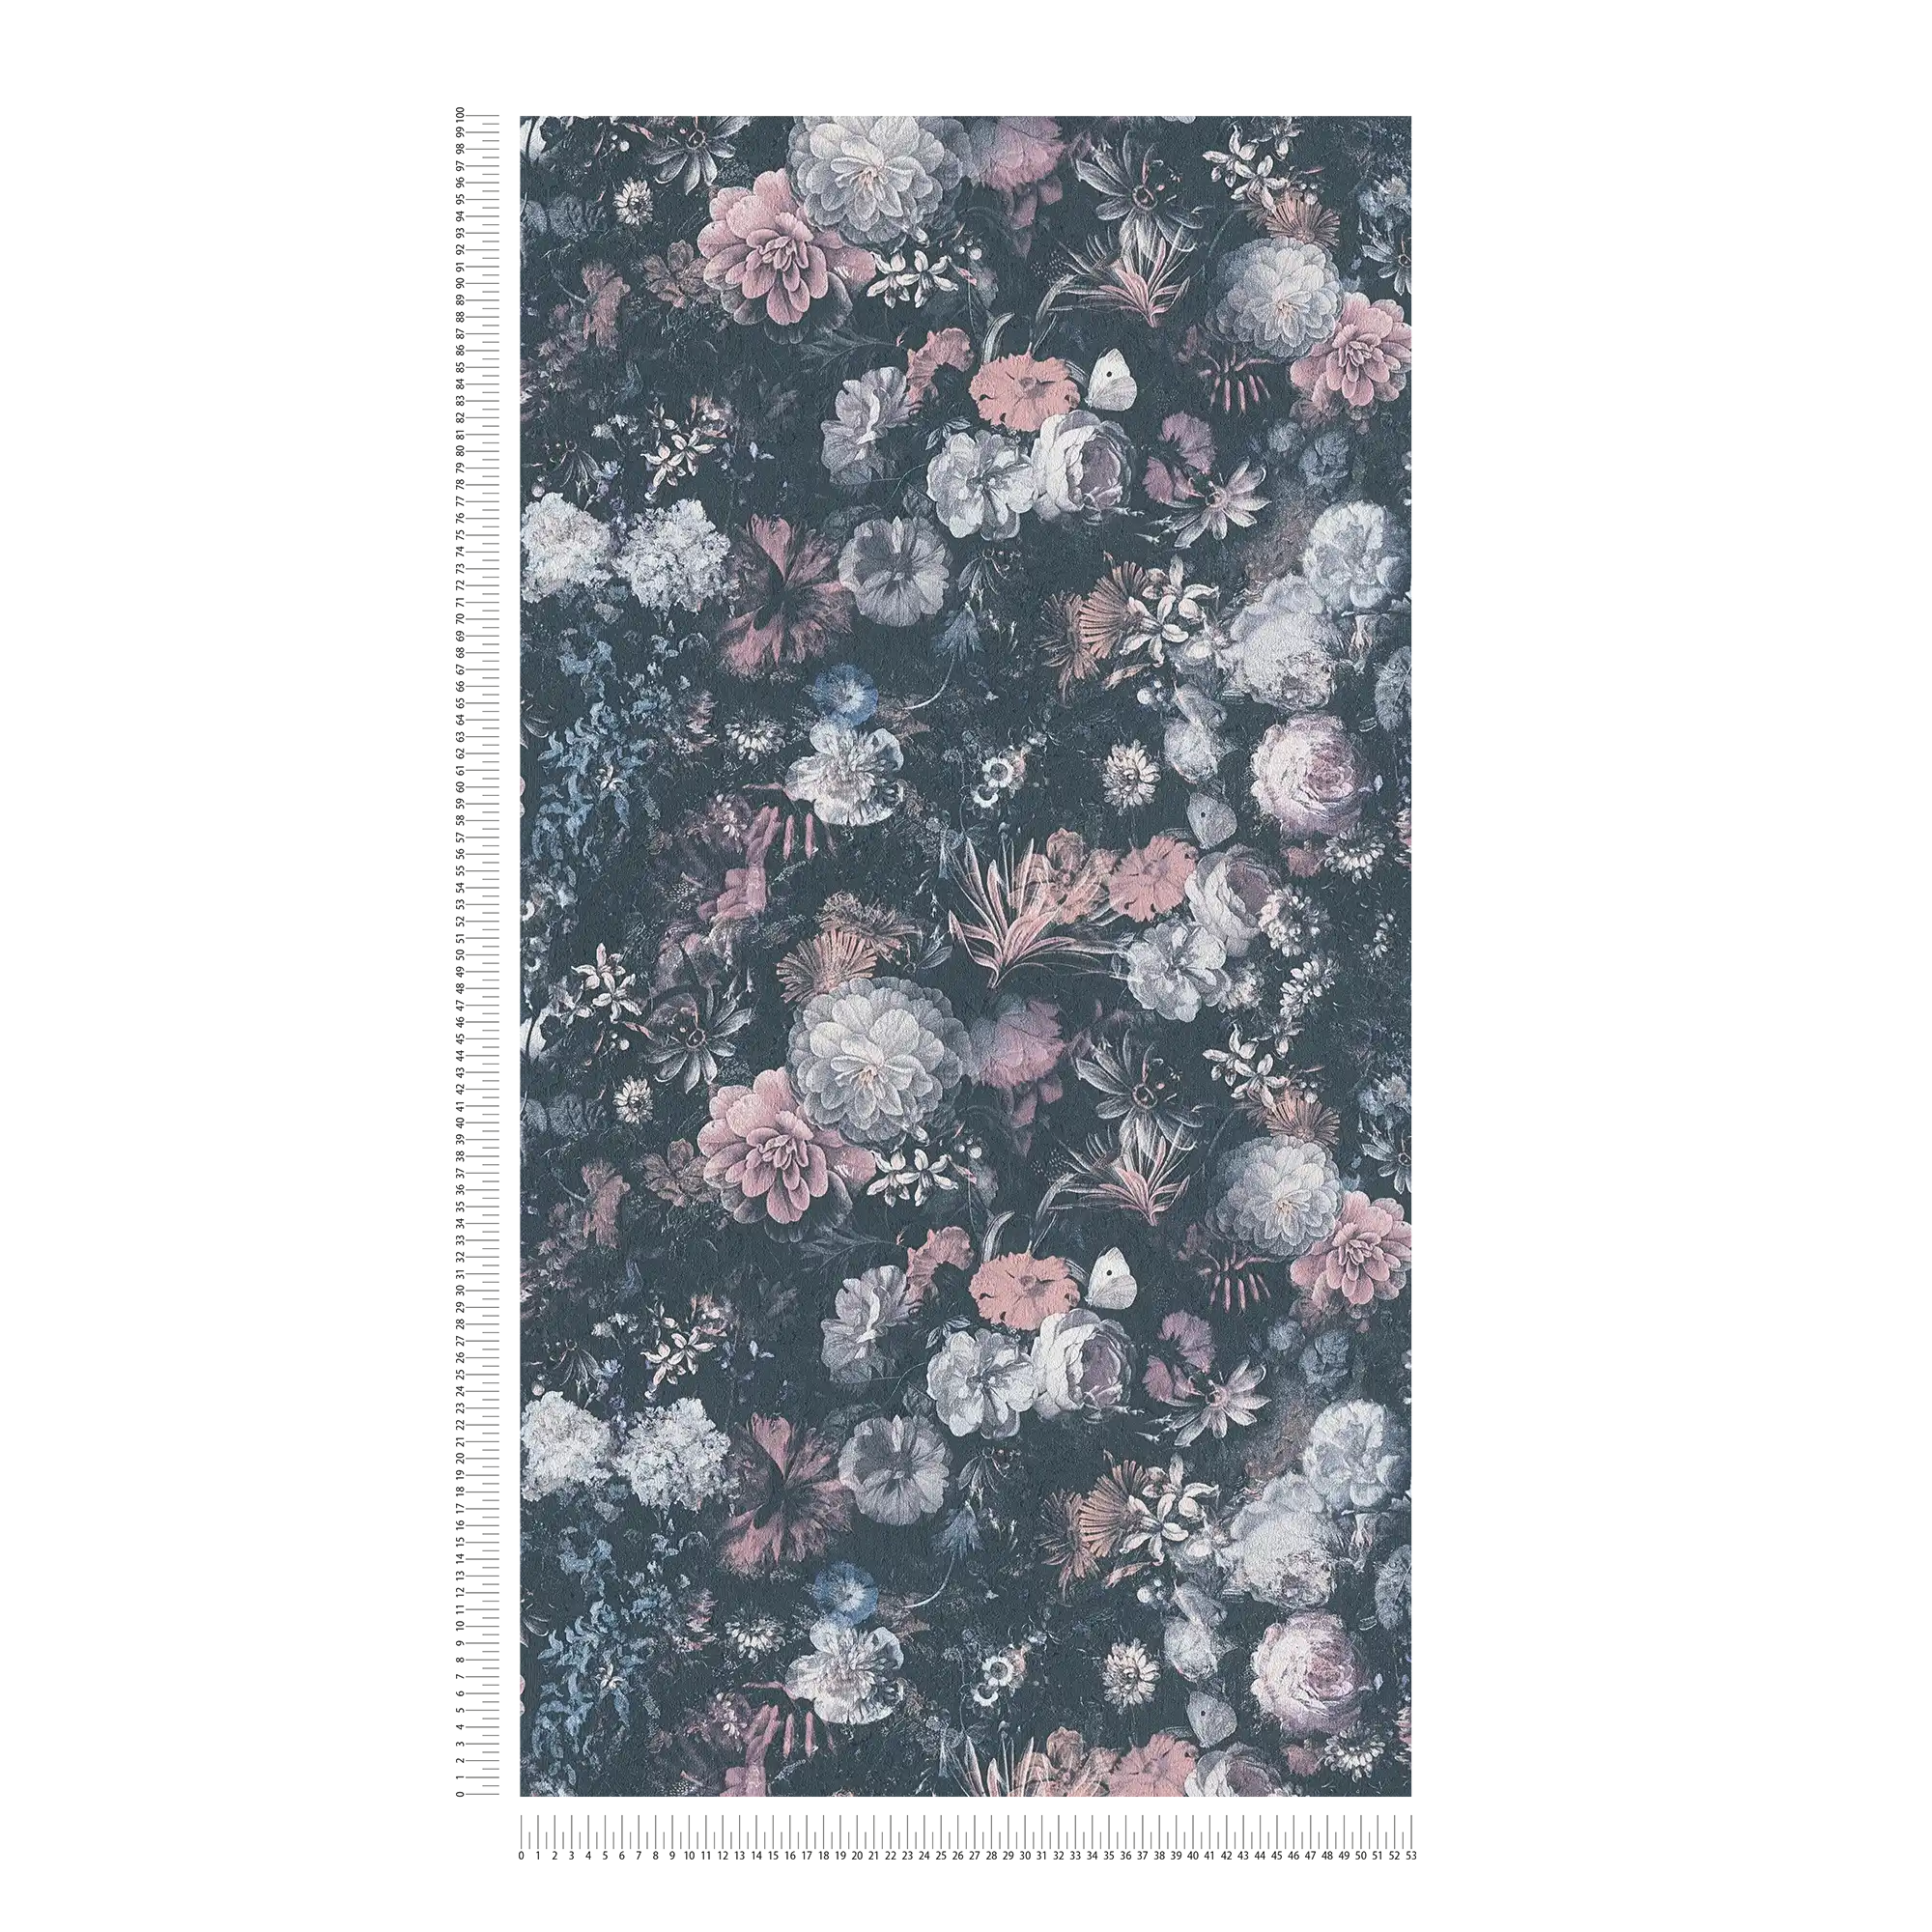             Blumentapete Rosen Gemälde mit Textureffekt – Grau, Rosa
        